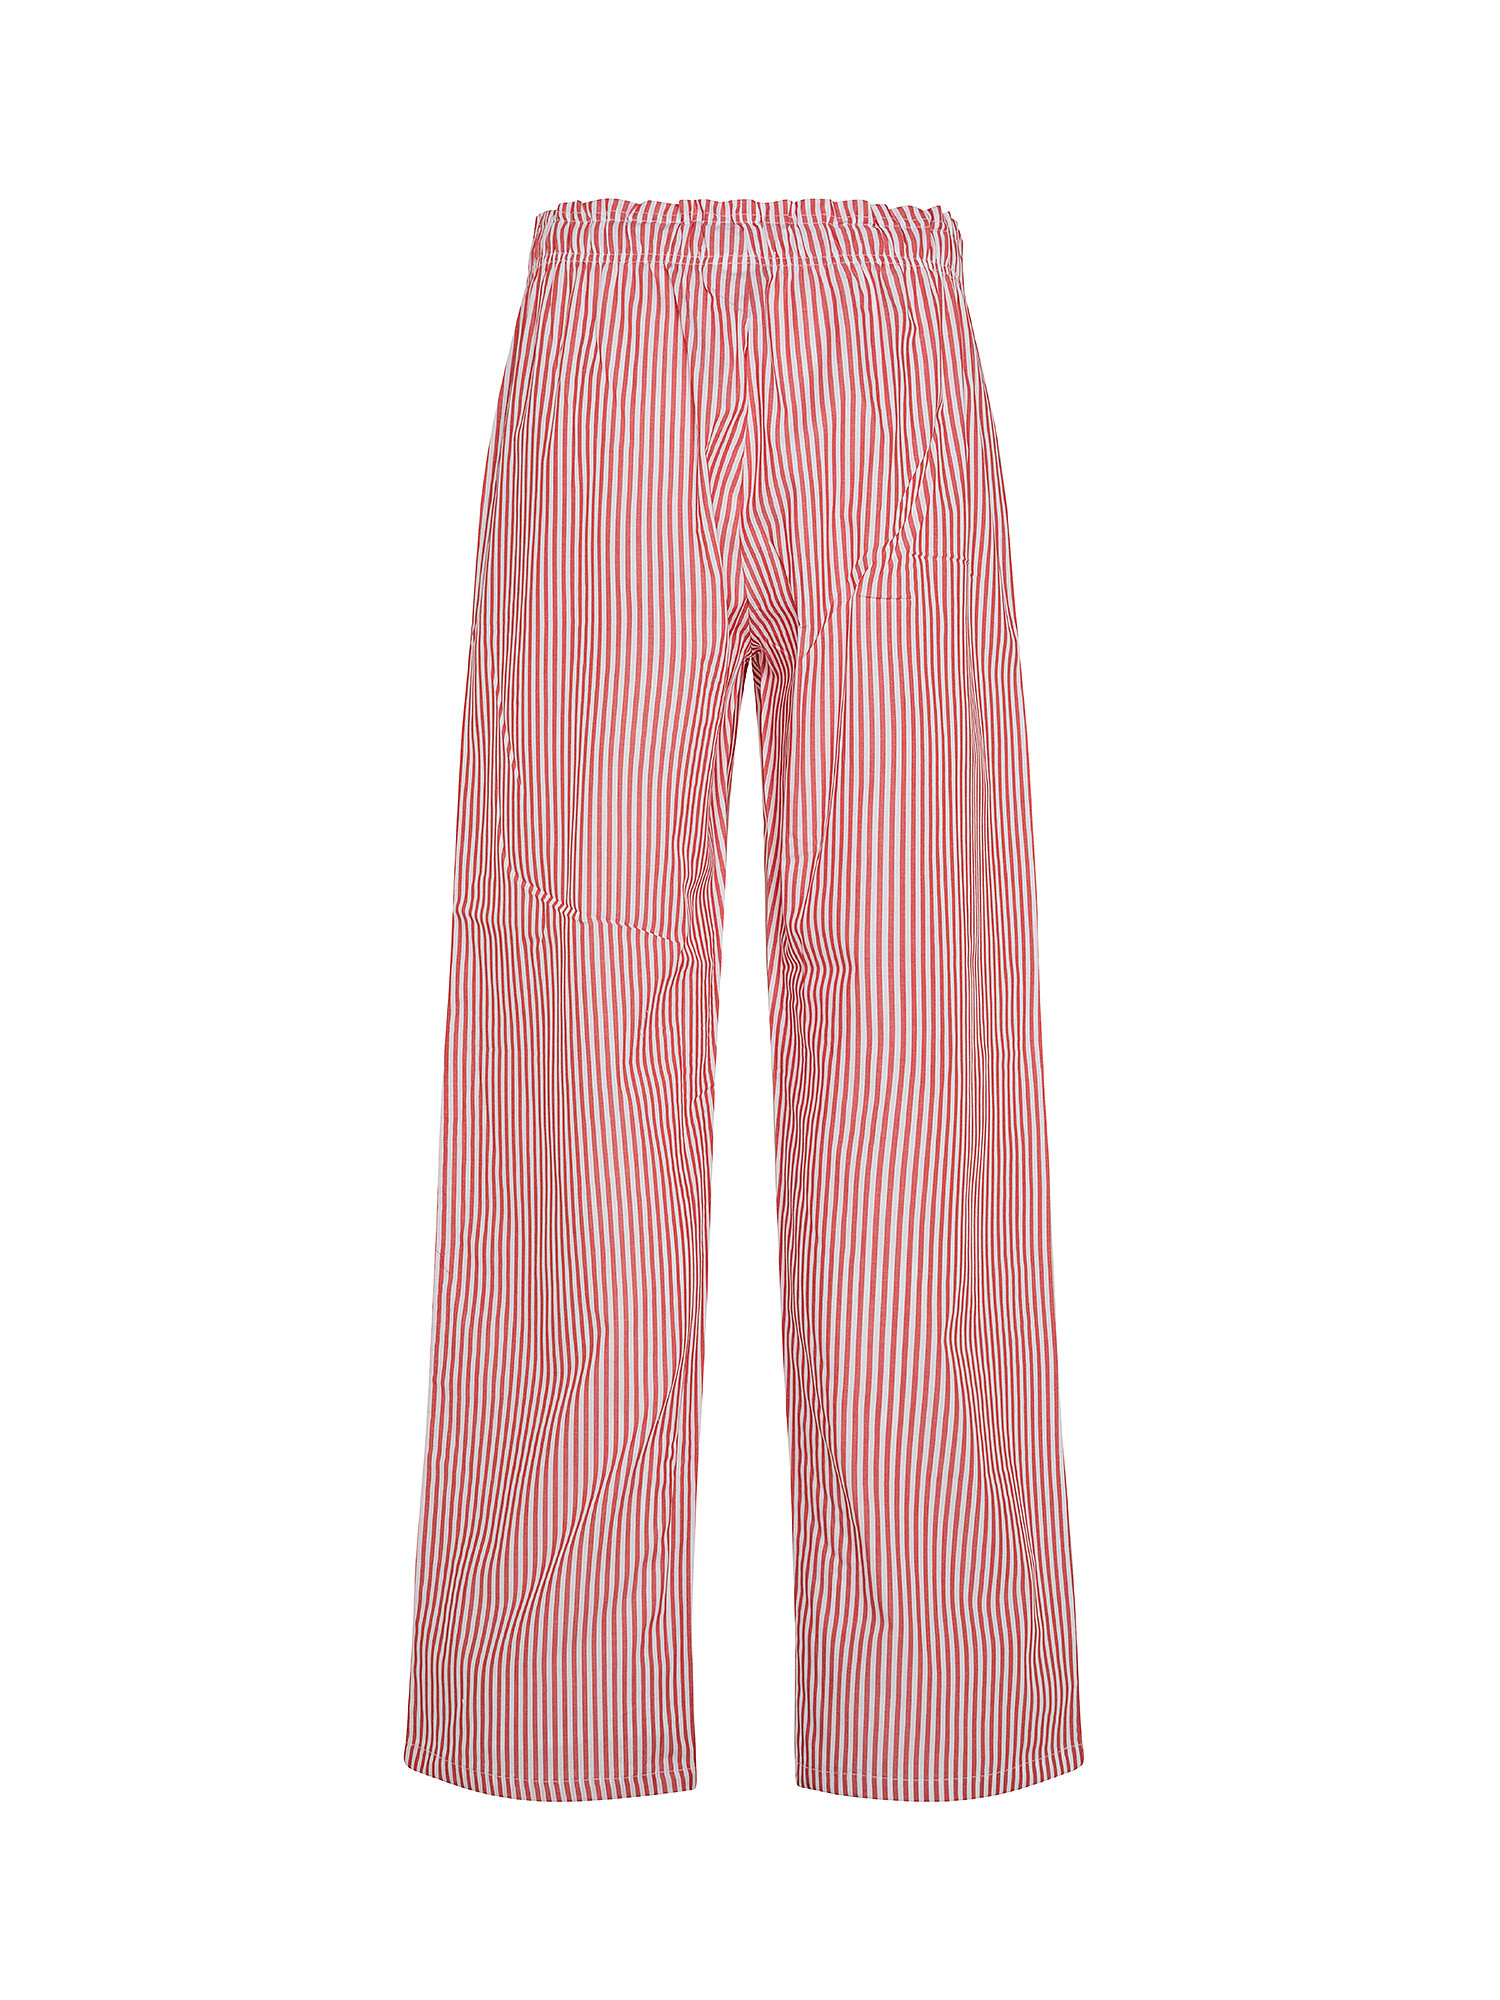 Pantaloni cotone tinto filo a righe, Rosso, large